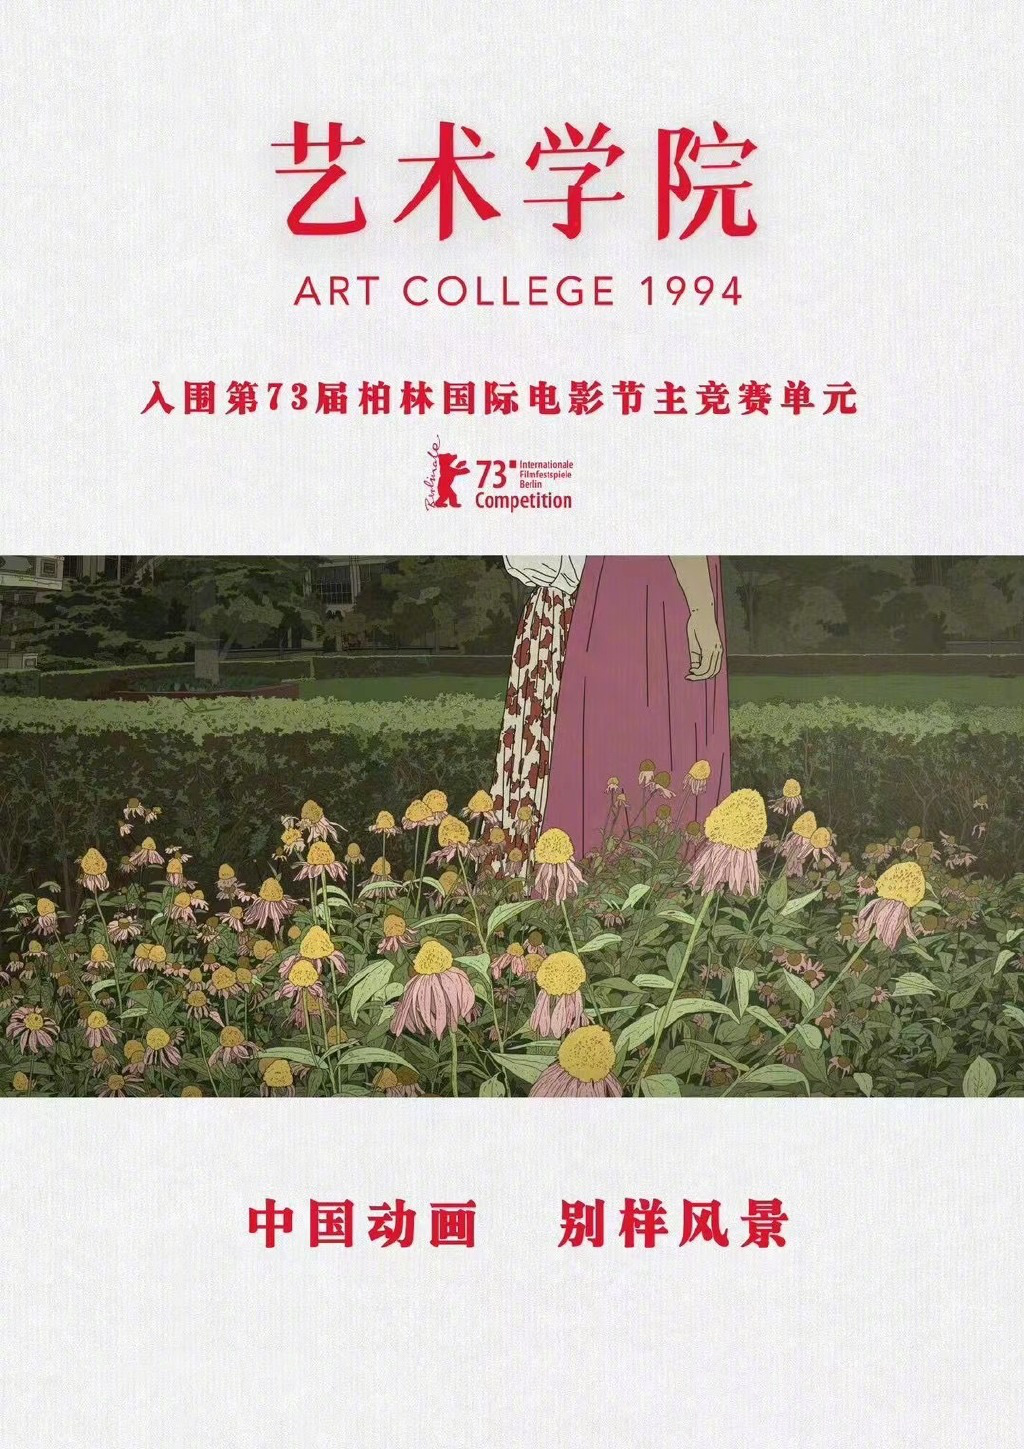 刘健执导动画电影〈艺术学院〉入围柏林主竞赛